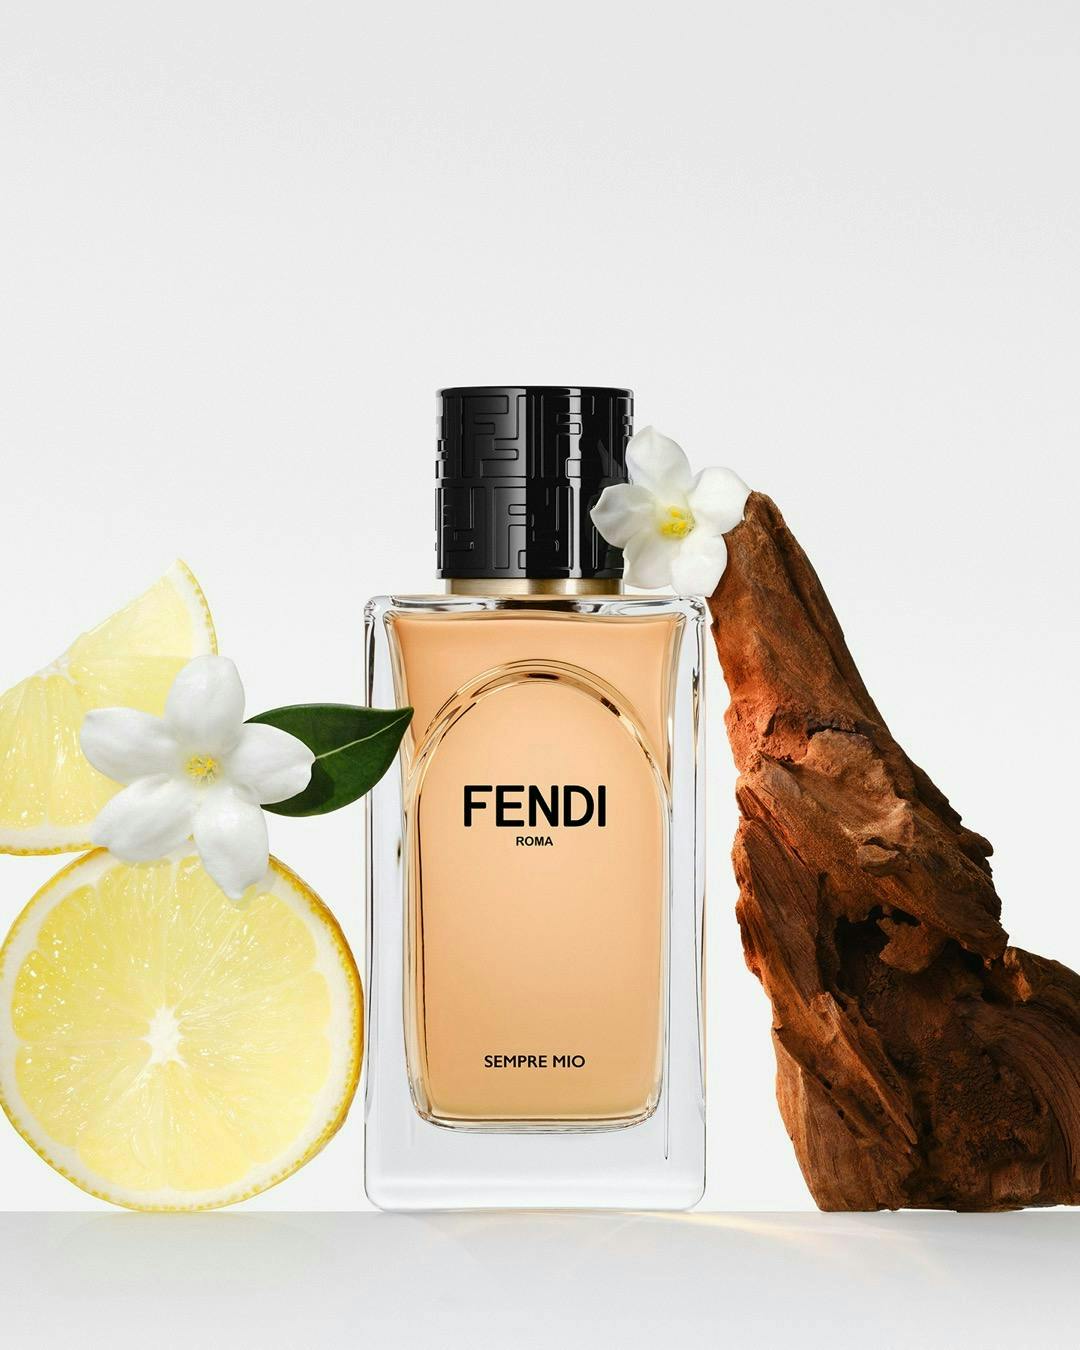 bottle cosmetics perfume citrus fruit food fruit orange plant produce